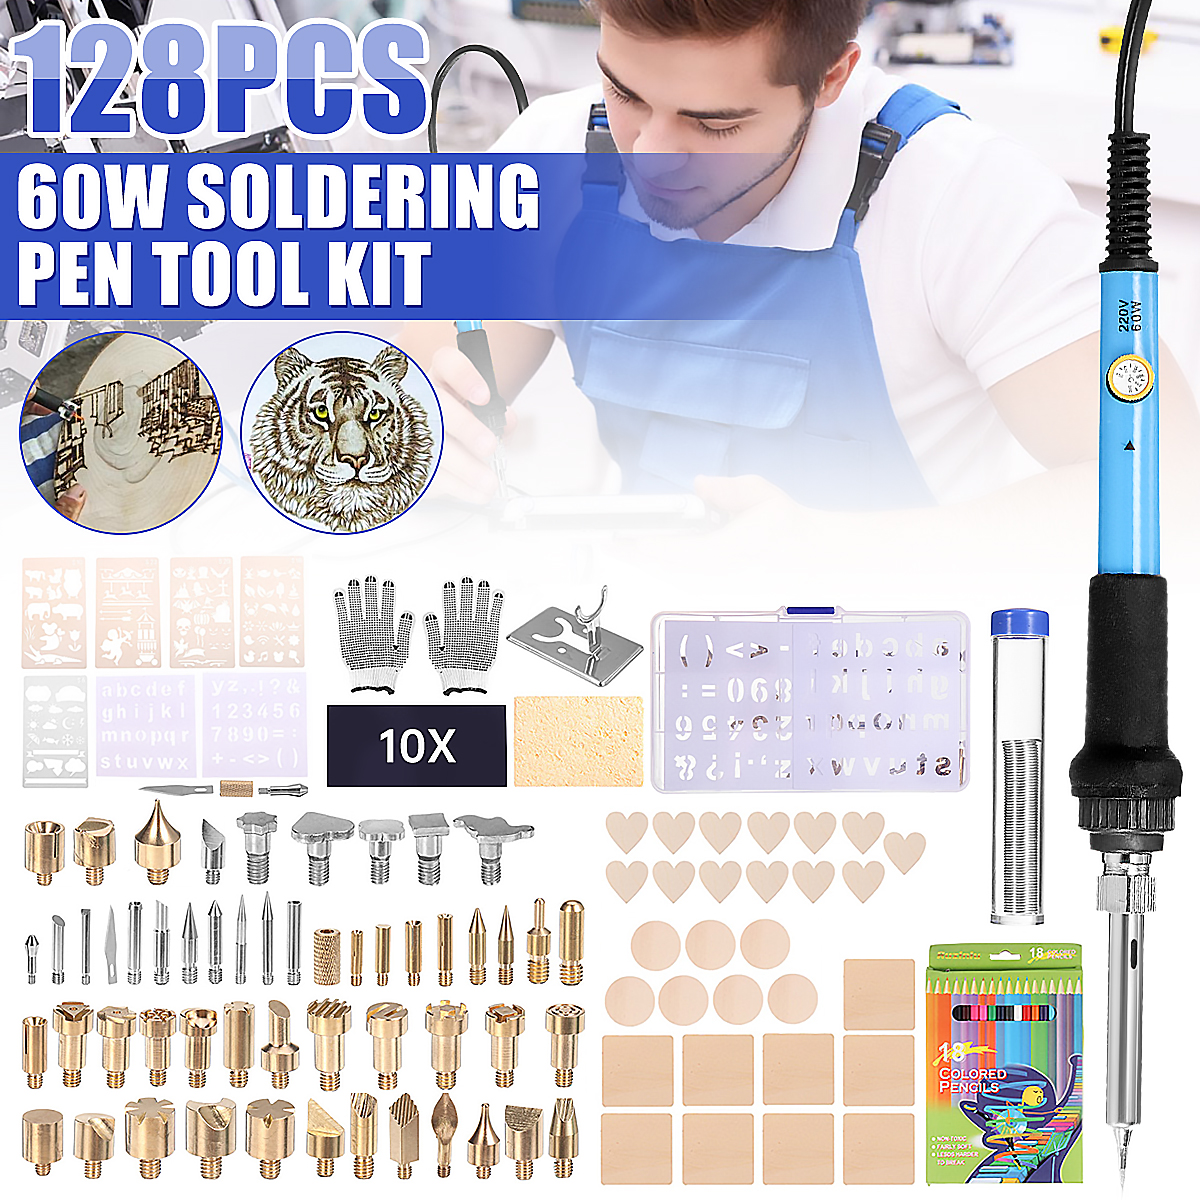 128Pcs-60W-Electric-Soldering-Iron-Kit-Engraving-Pen-Wood-Burning-Pyrography-Craft-Tool-1830874-1